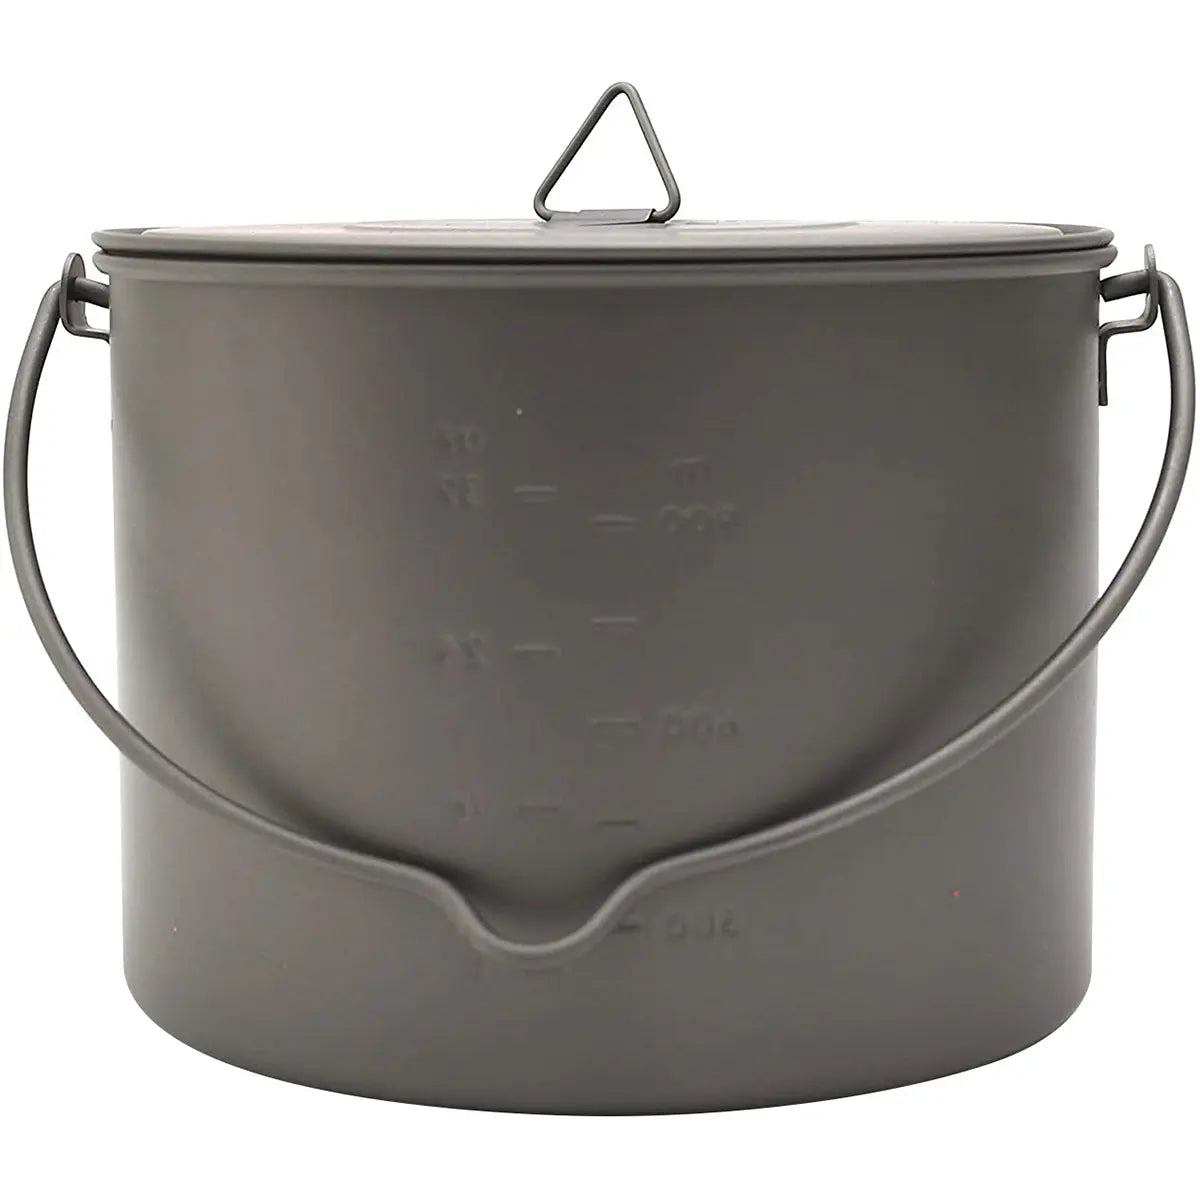 TOAKS Titanium 1300ml Outdoor Camping Cook Pot with Bail Handle POT-1300-BH TOAKS